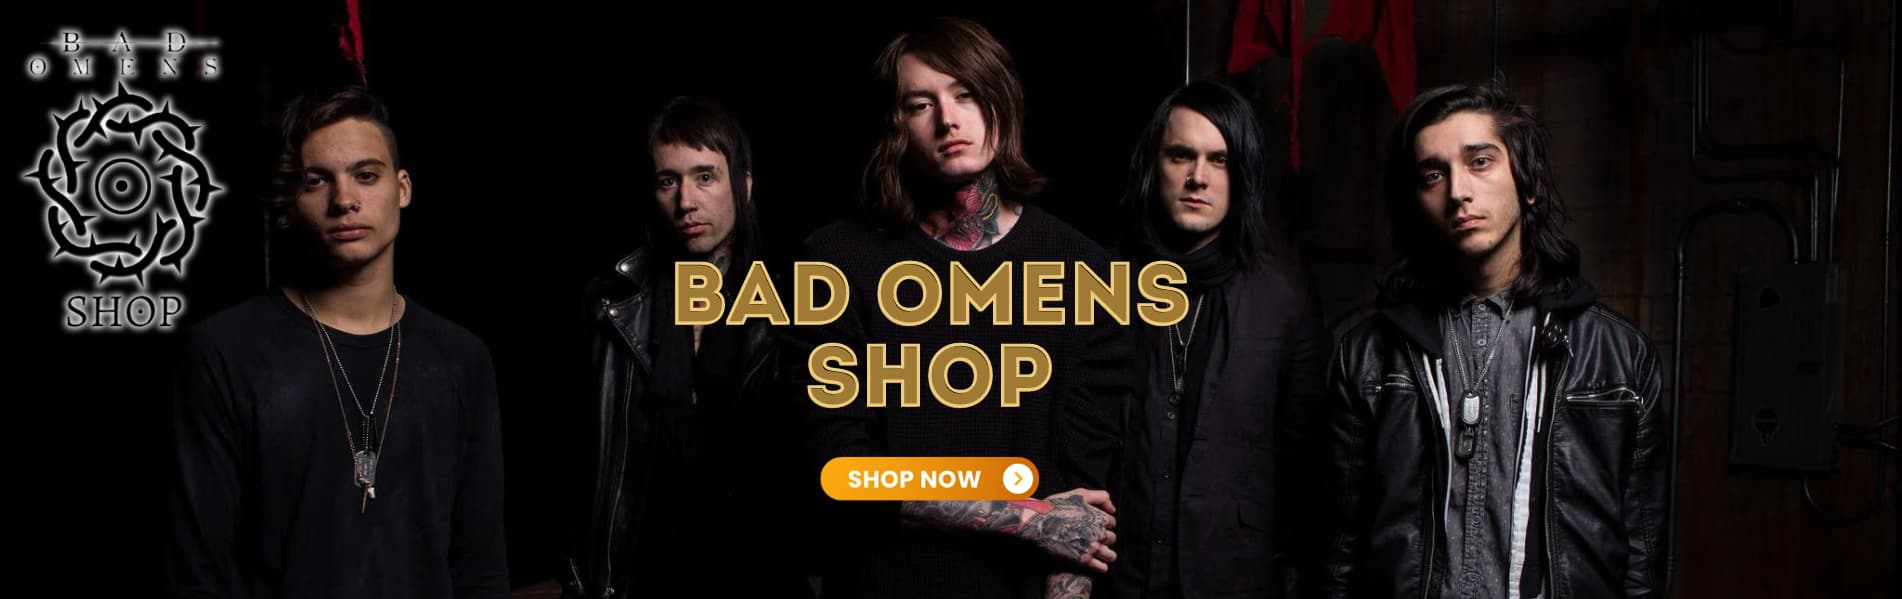 Bad Omens Shop banner1 - Bad Omens Shop